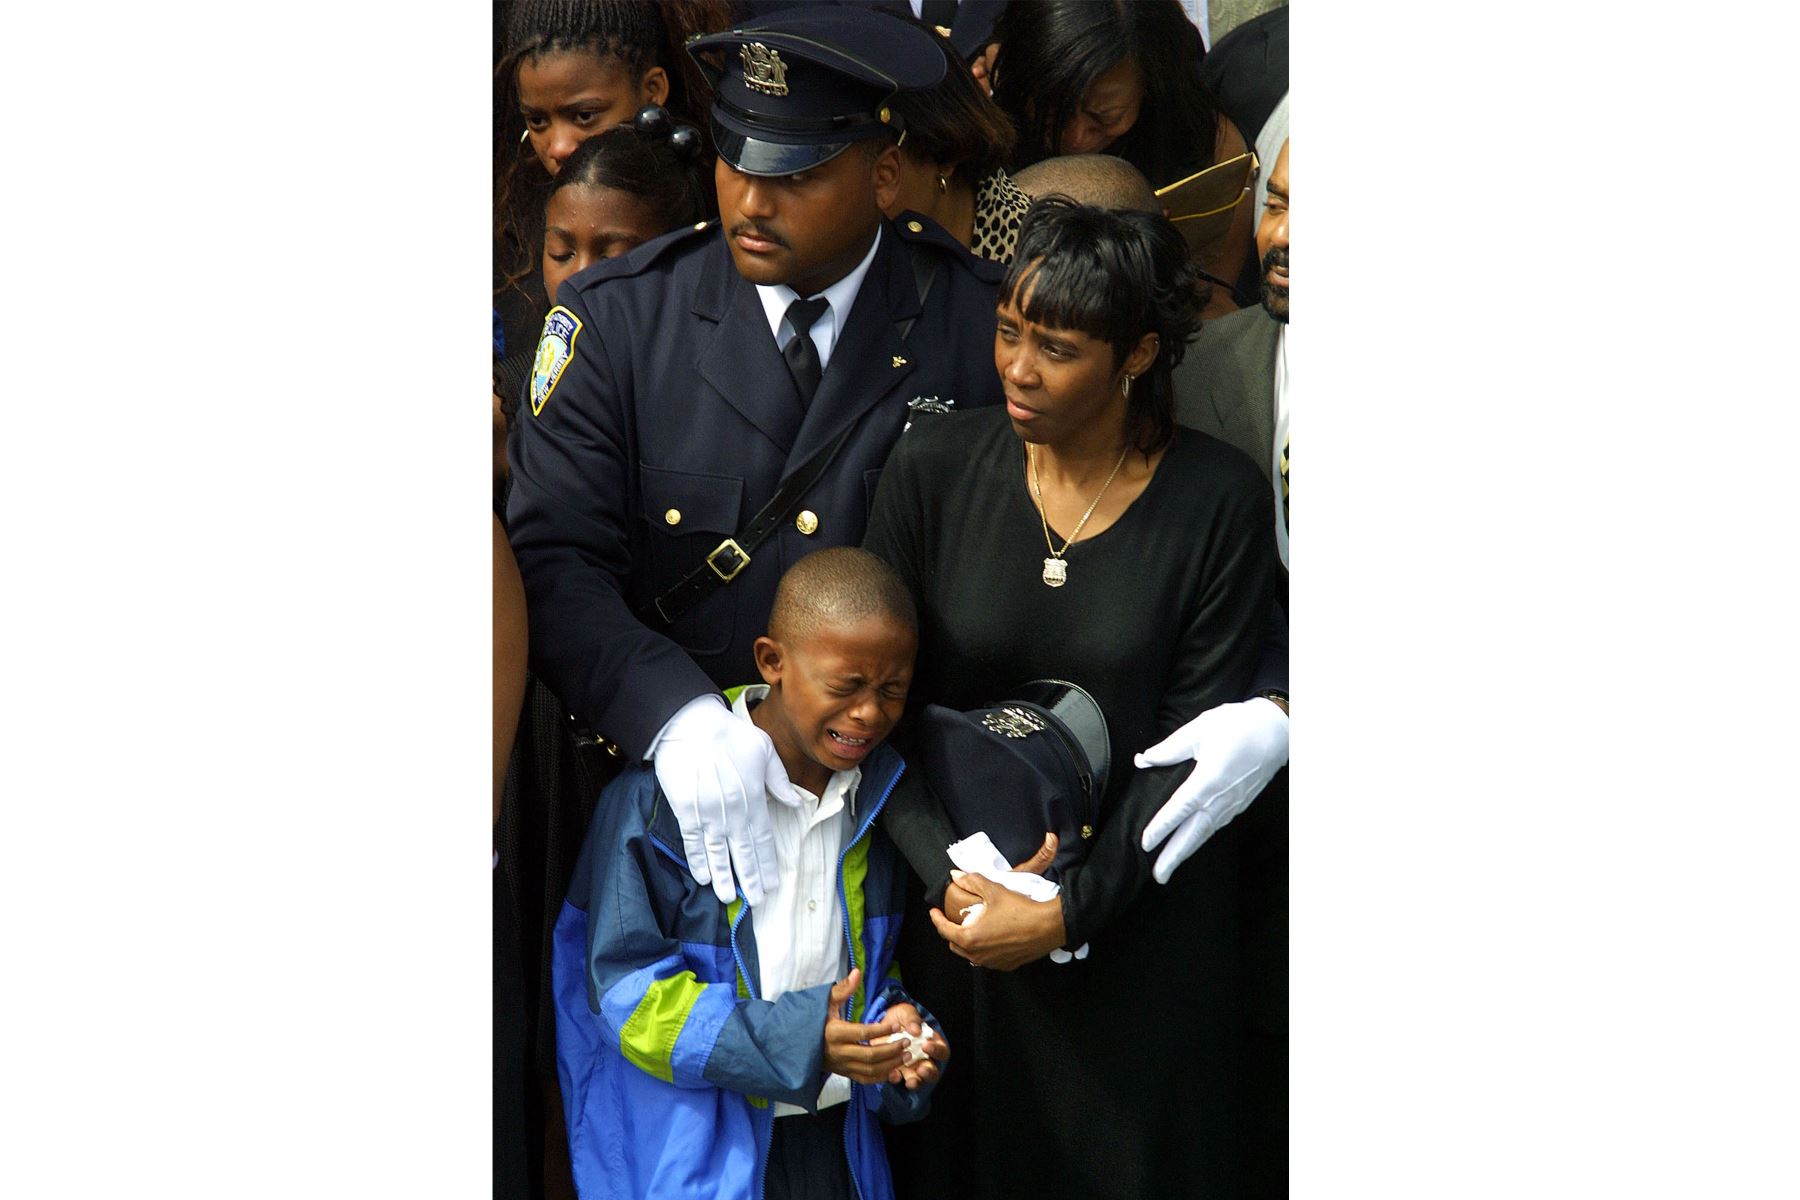 Daphne Davis está rodeada de familiares y amigos durante el funeral de su esposo, Clinton Davis Sr., oficial del Departamento de Policía de la Autoridad Portuaria, el 27 de septiembre de 2001 en el vecindario de Flushing en Queens, Nueva York. 
Foto: AFP